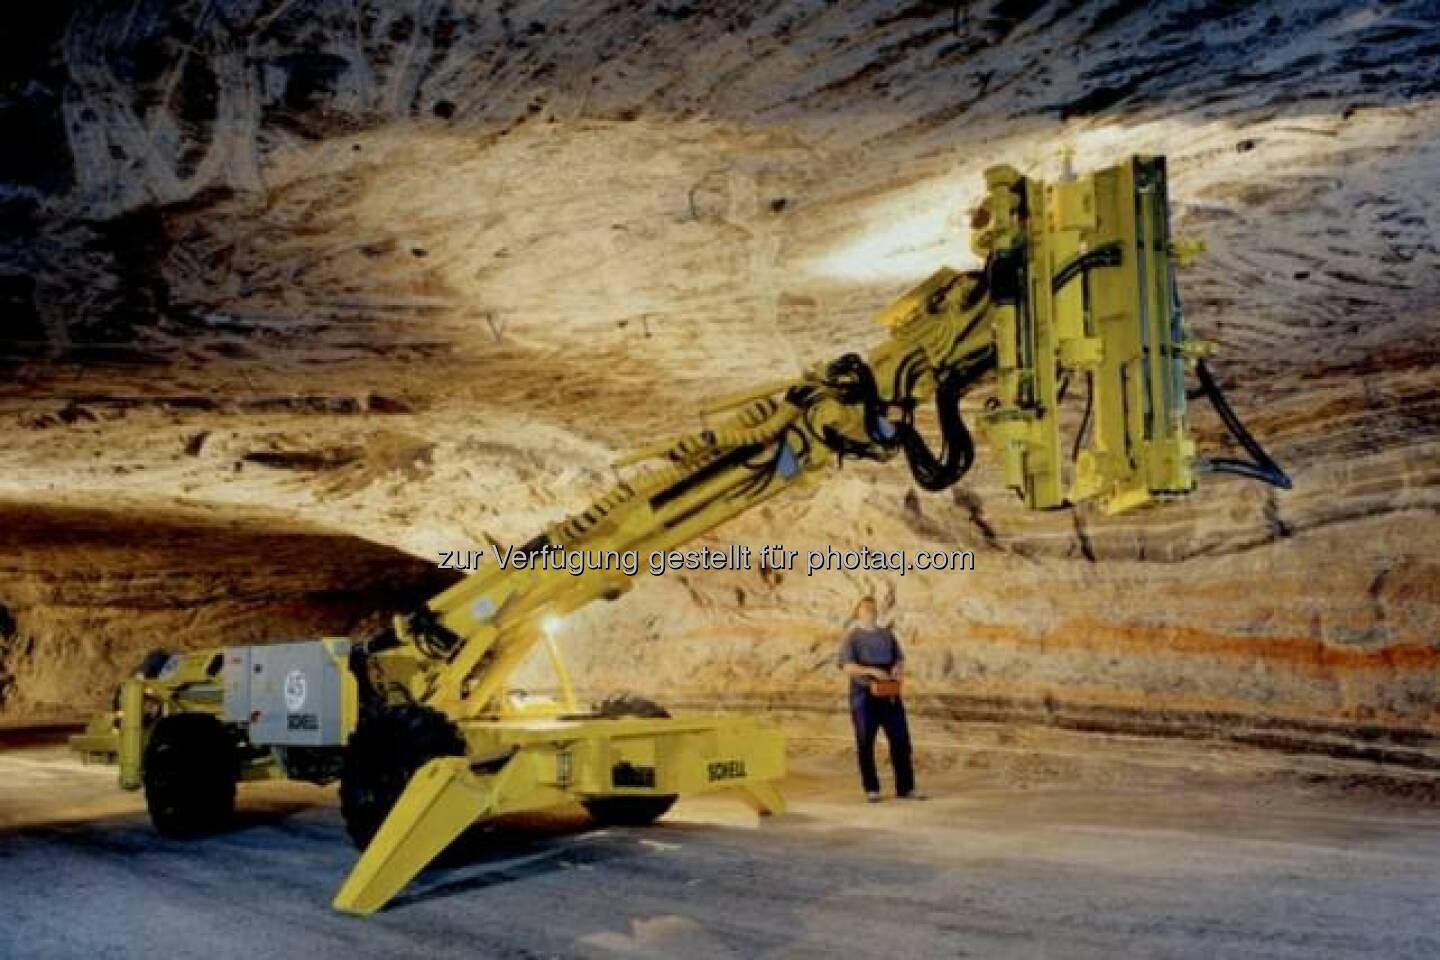 K+S: Mit dem Firstanker-Bohrwagen werden 1,2 Meter lange Gewindestangen in die Decken der Grubenbaue gesetzt. Sie verbinden die Salzschichten miteinander und geben ihnen so mehr Festigkeit.